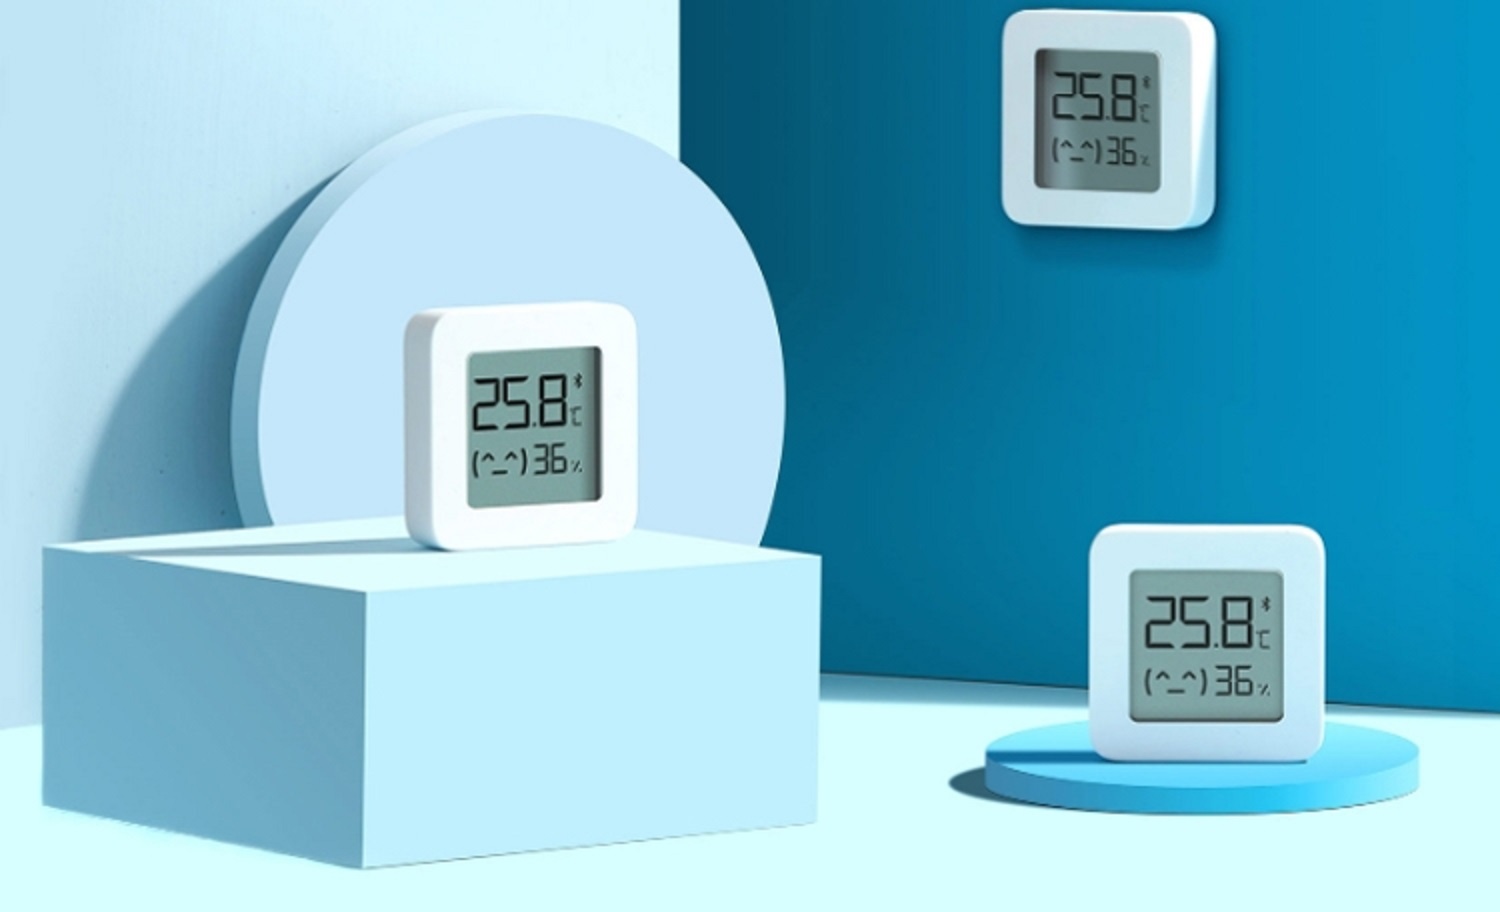 Pour Xiaomi Mi Hygromètre Thermomètre Numérique Bluetooth Thermomètre  Professionnel Maison Intérieure